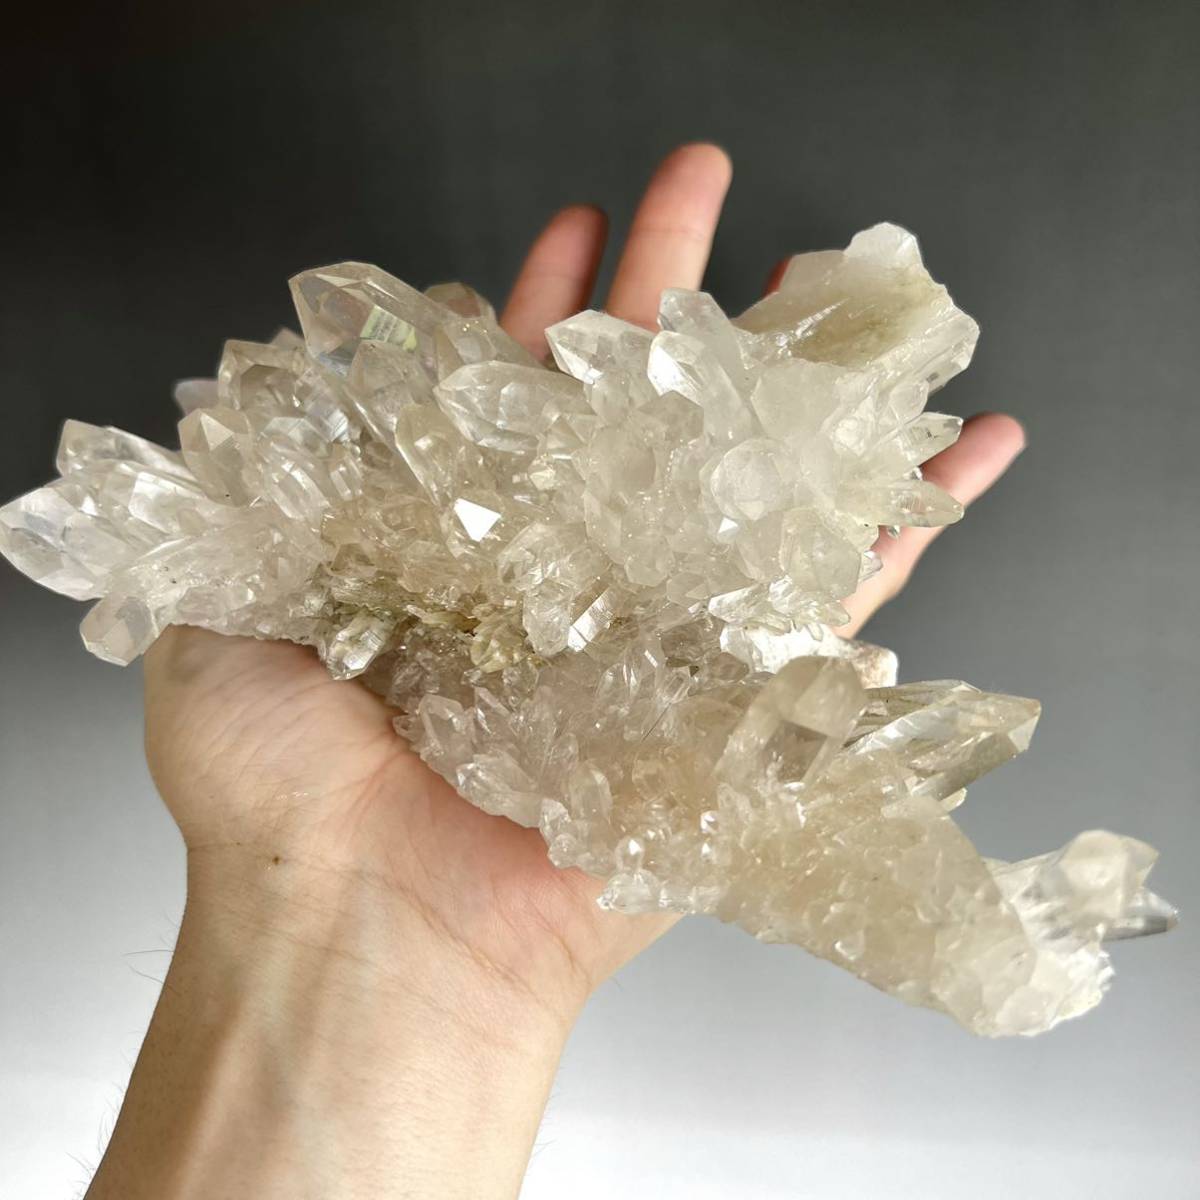  высокое качество himalaya кристалл manika Ran производство cluster кристалл cluster crystal 